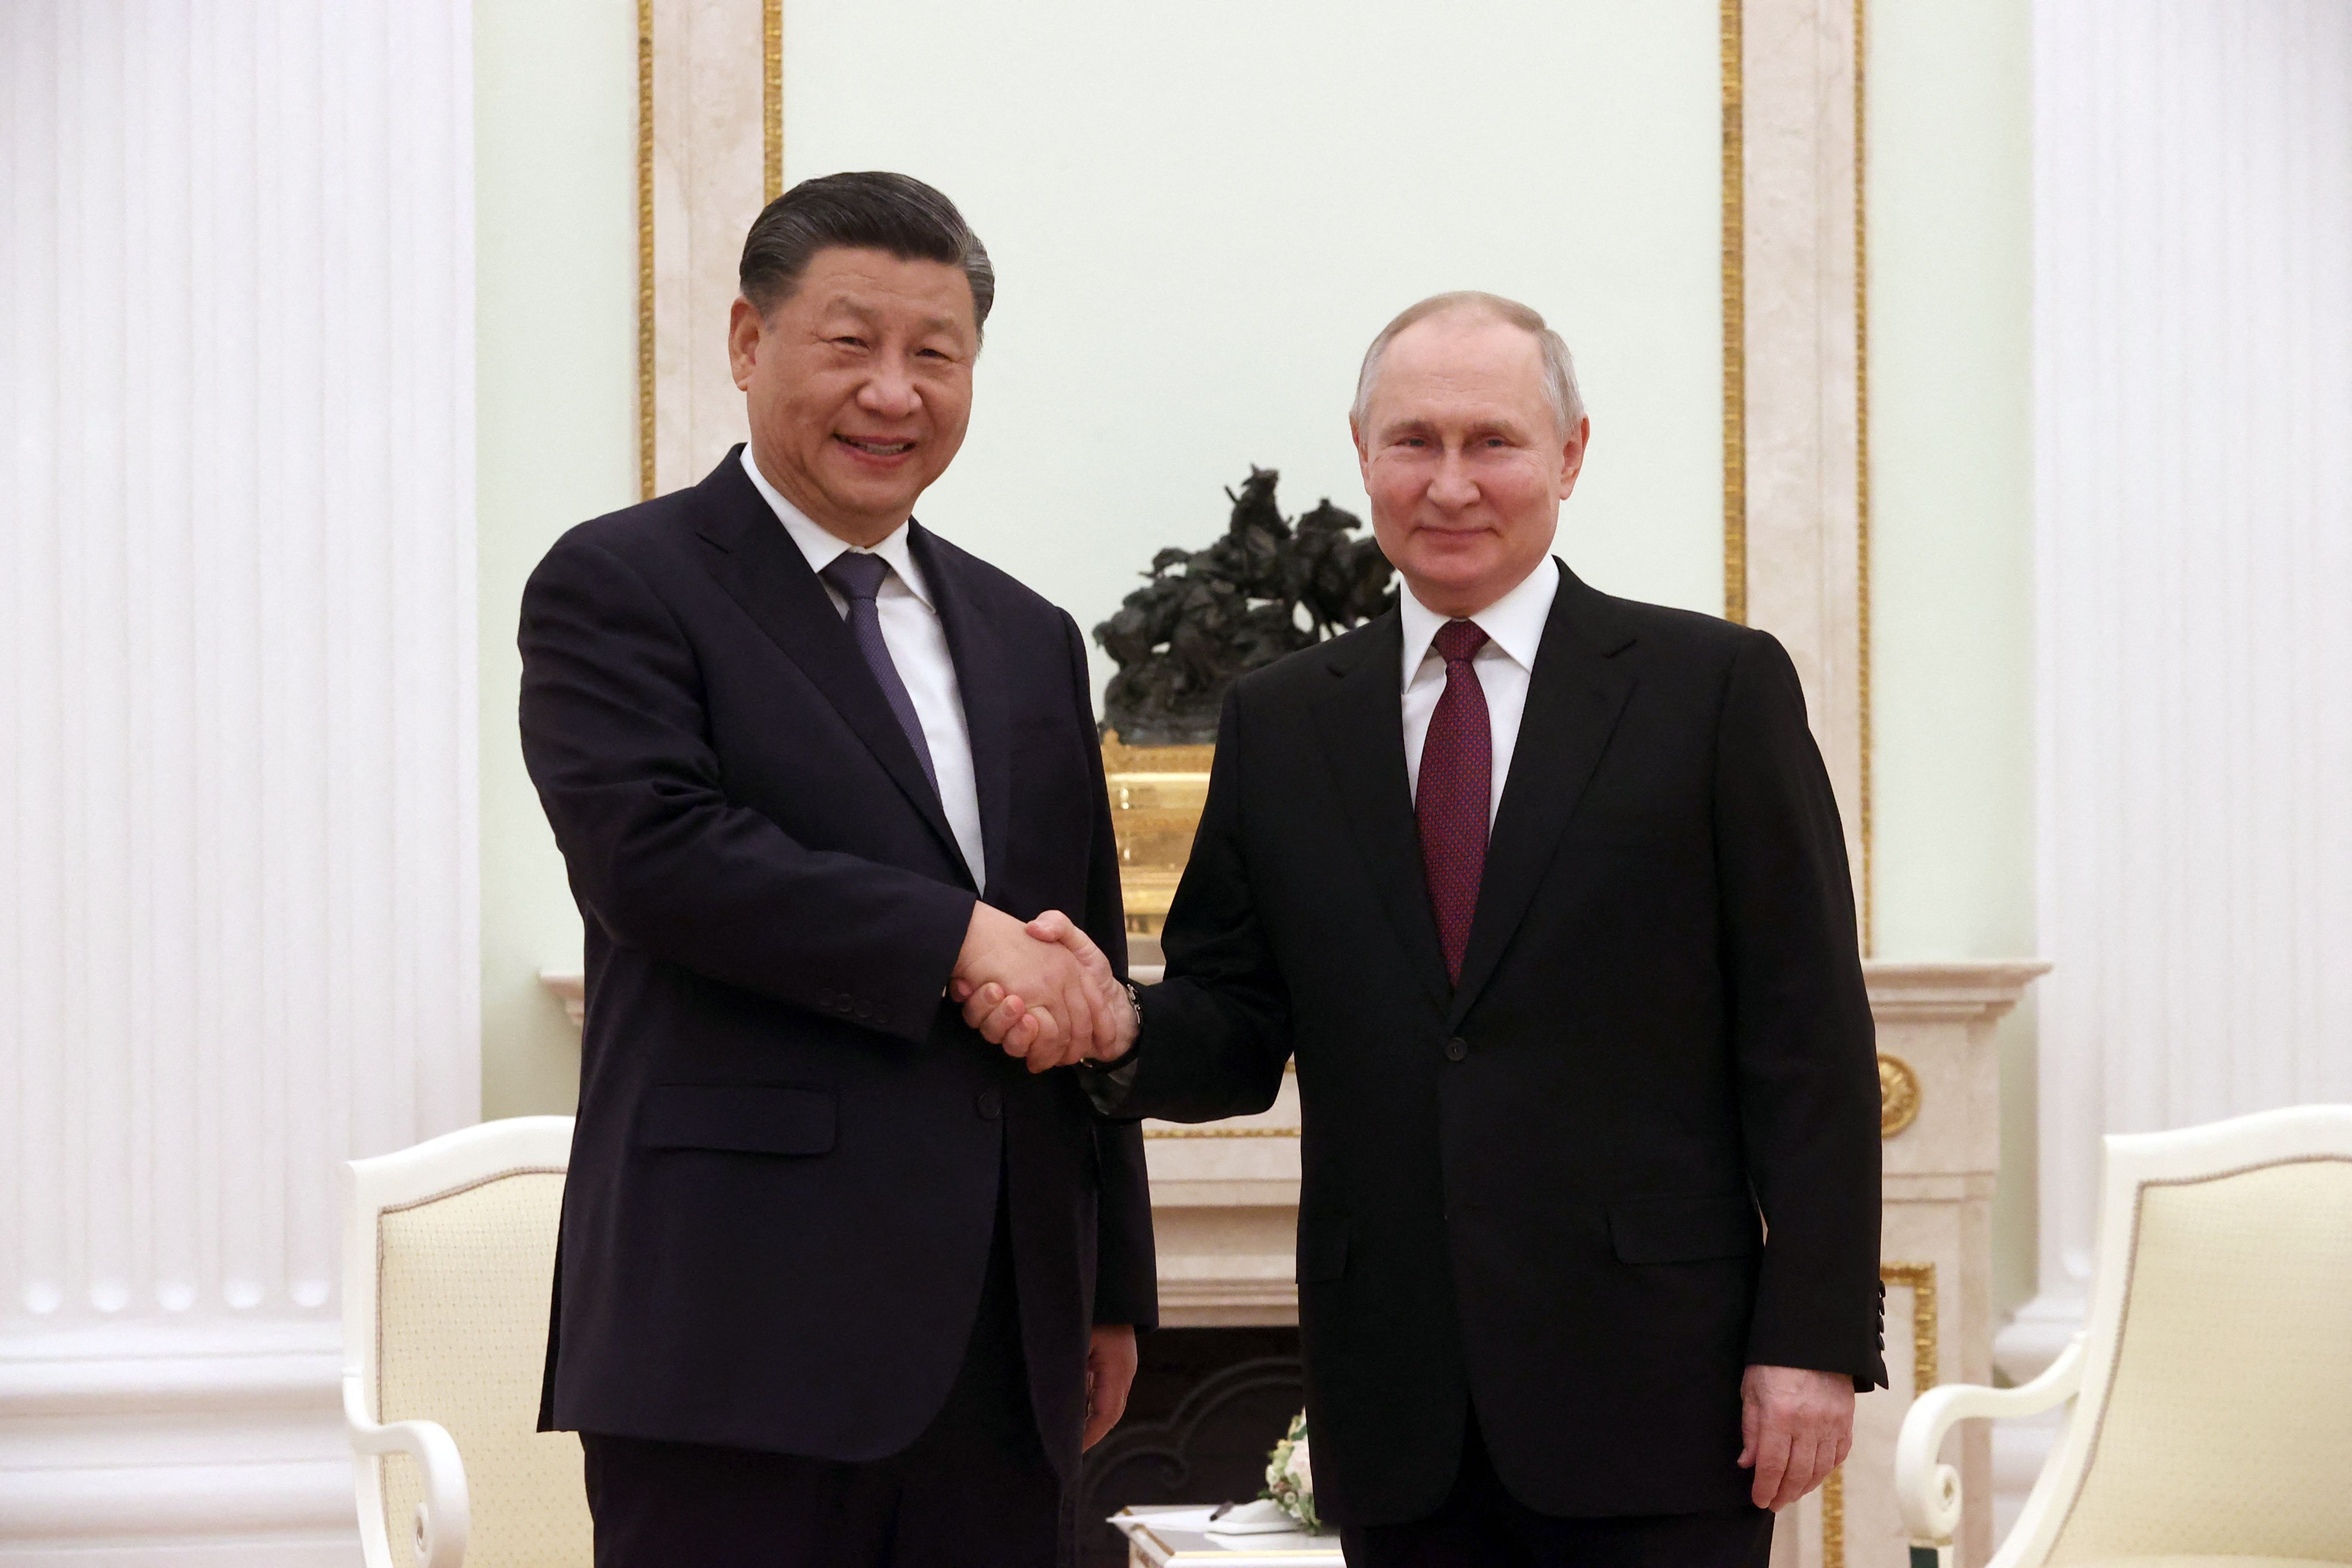 Xi Jinping and Vladimir Putin shake hands